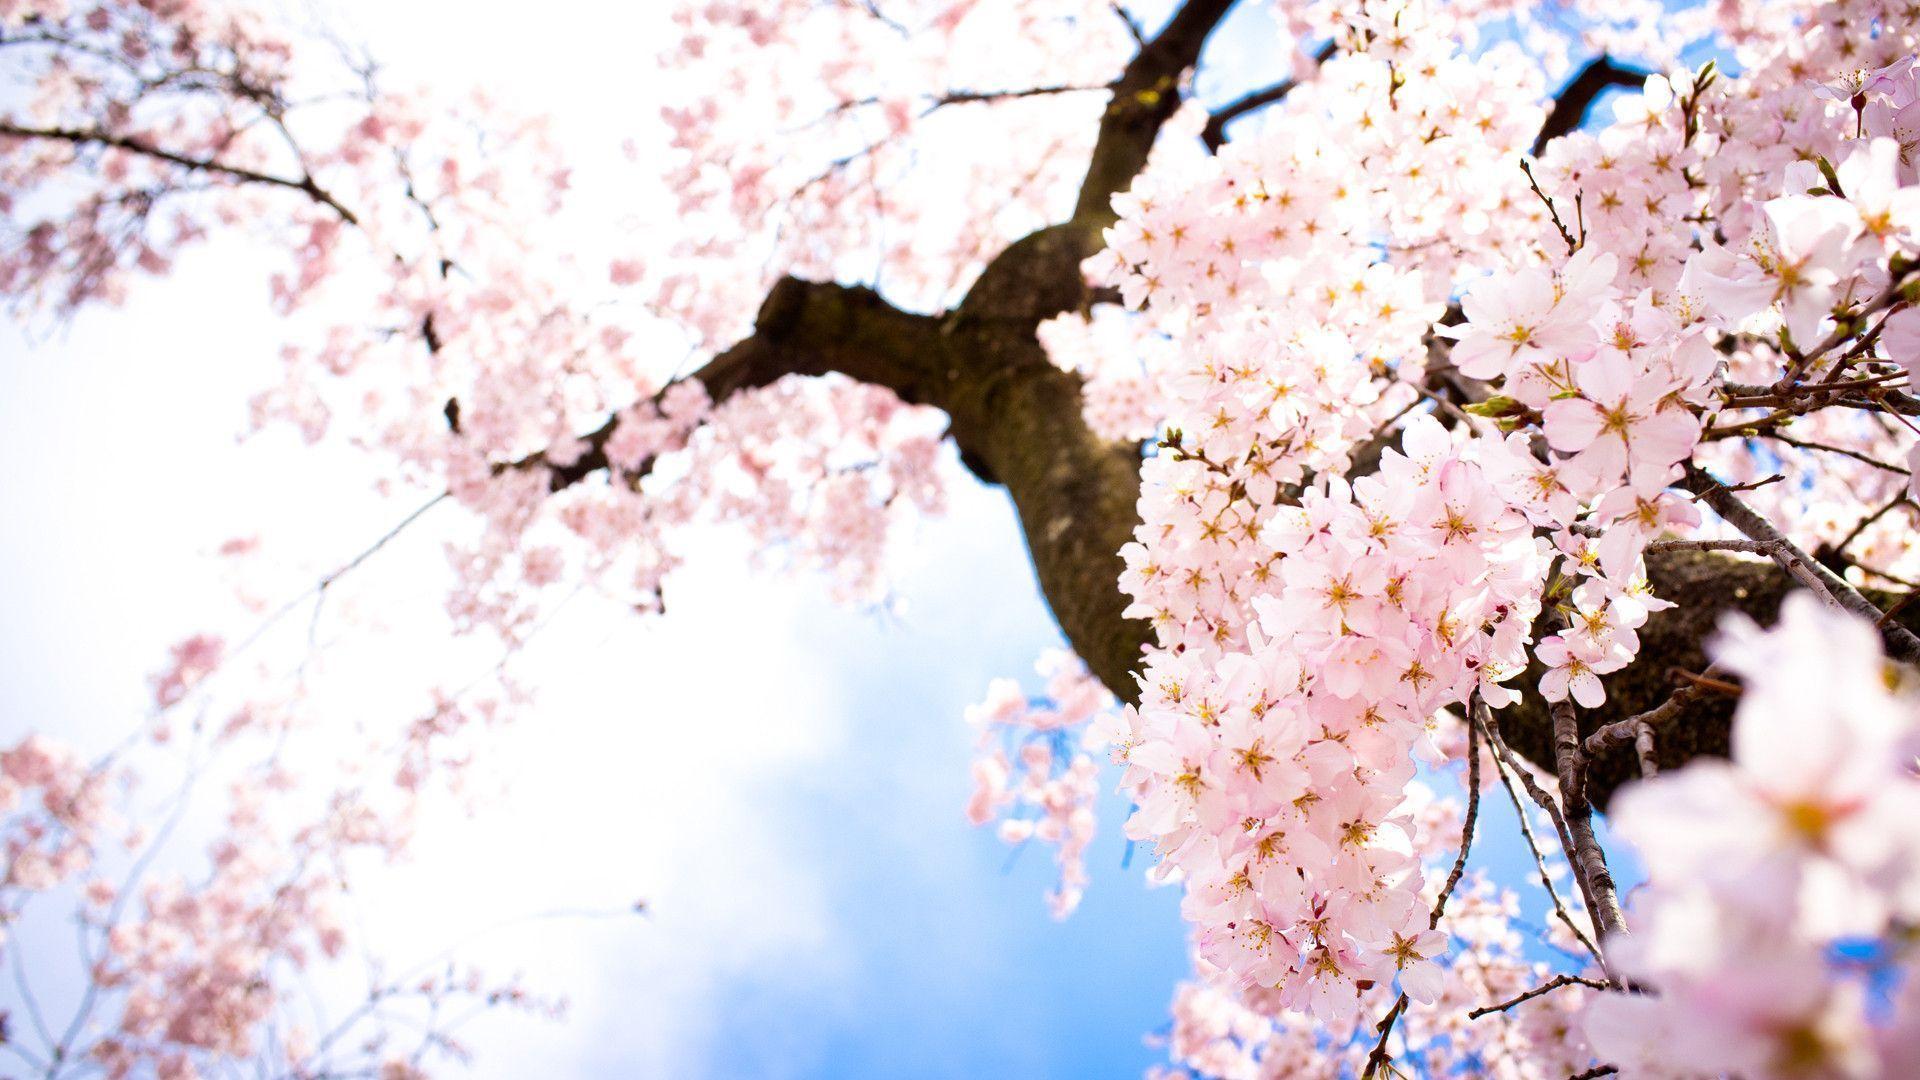 Sakura flower wallpaper image all free download